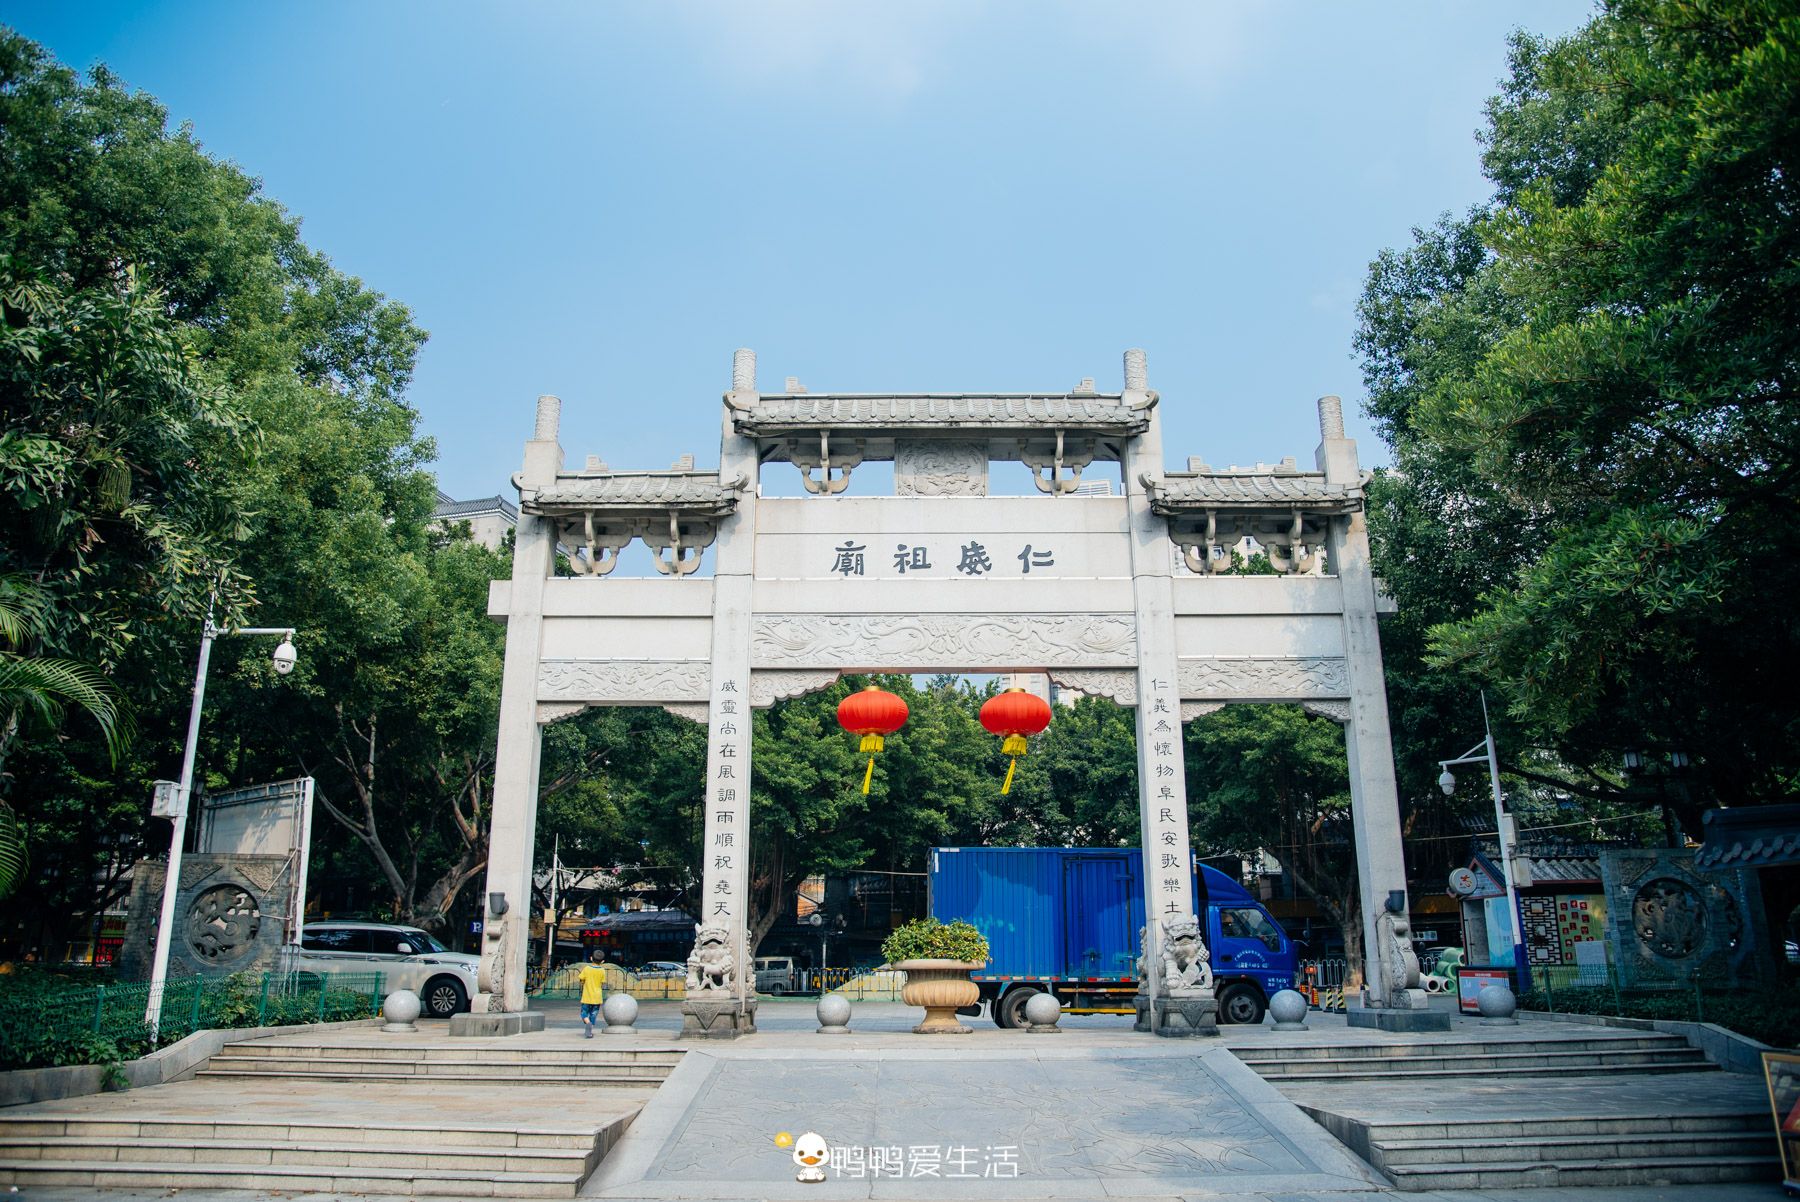 🎈提起广州旅游，很多人会想起 广州塔 、长隆野生动物园等网红地方。但其实，西关是最有韵味的一片区域！